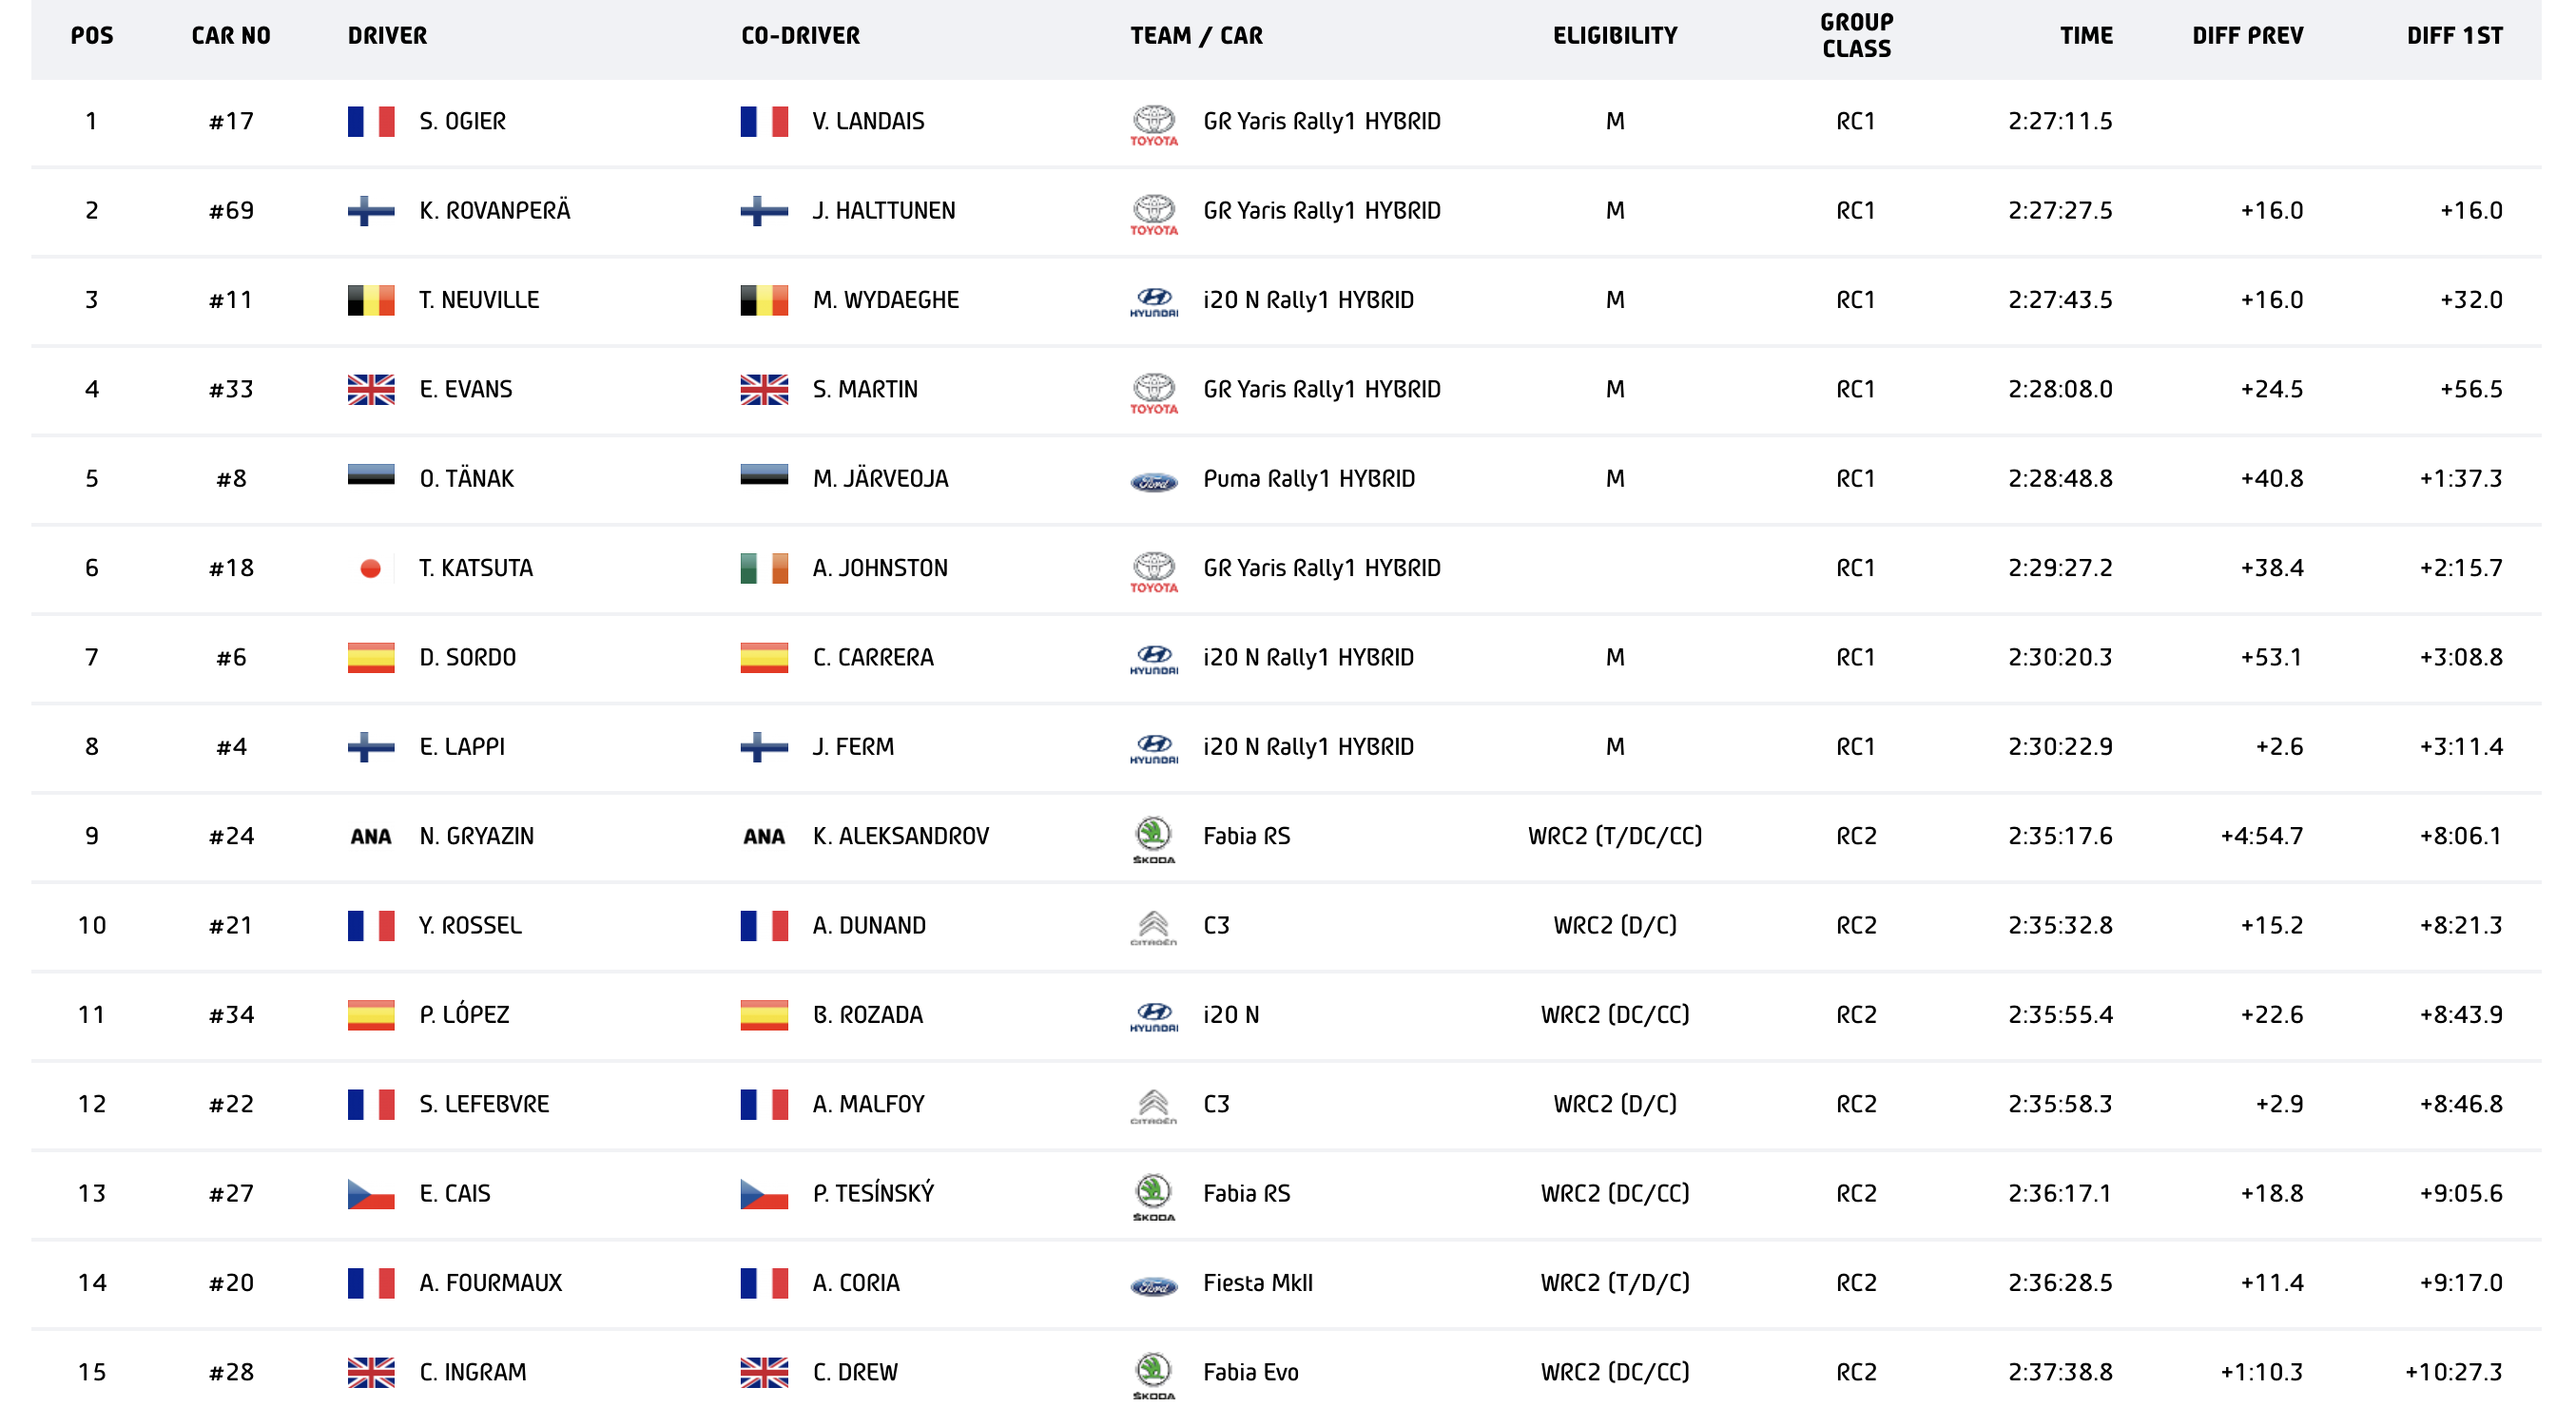 WRC - Ράλλυ Μόντε Κάρλο, Γενική κατάταξη έπειτα από την ΕΔ14